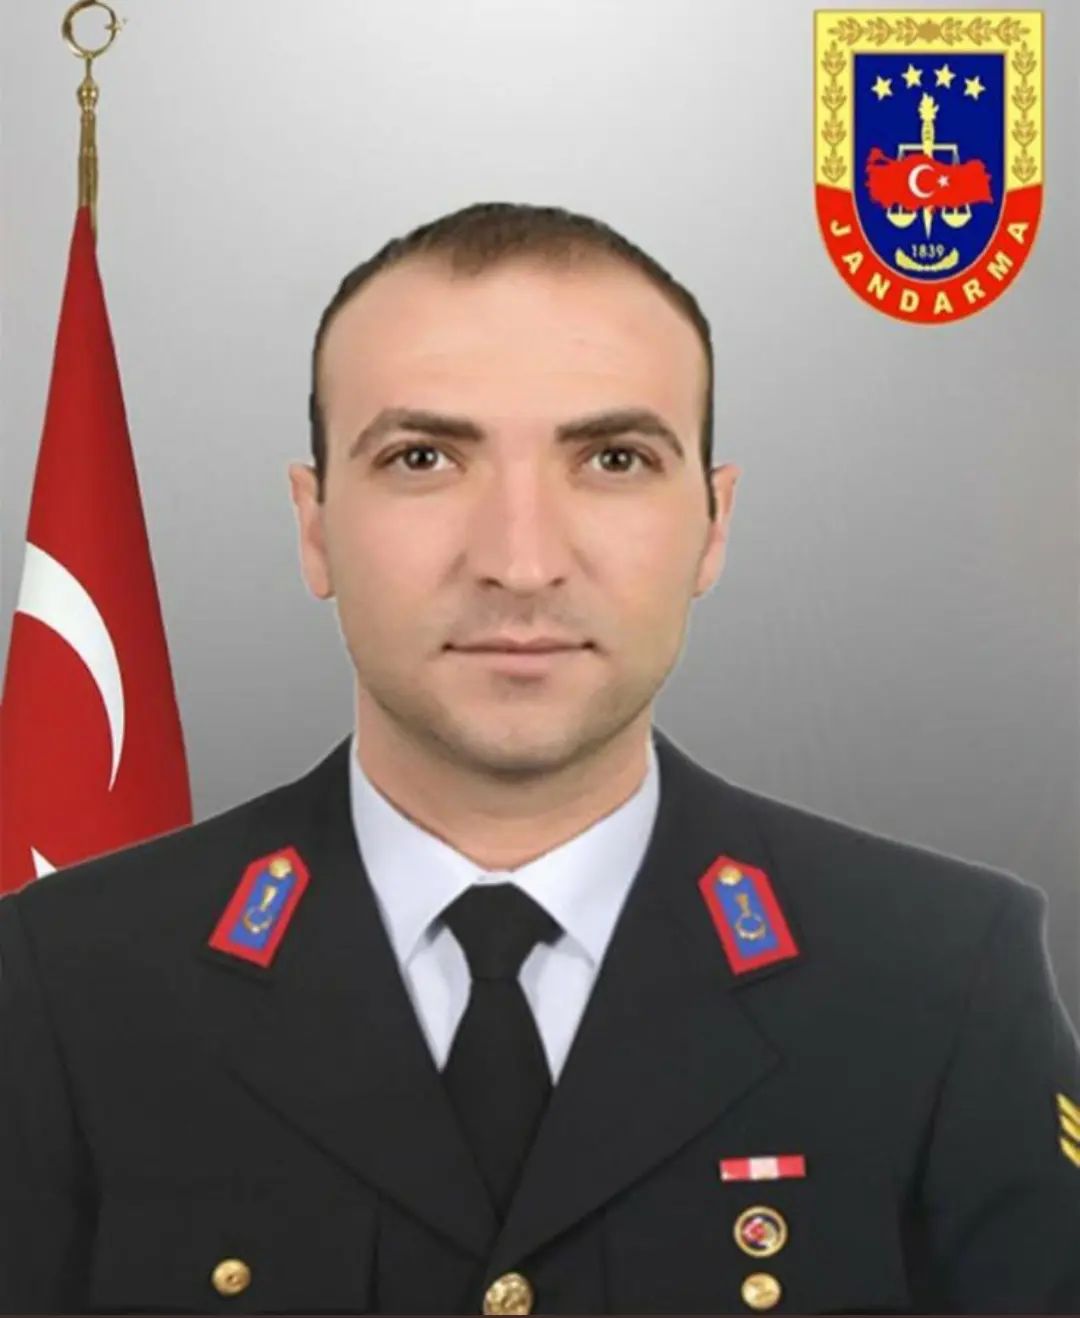 Gökdere Jandarma Karakolunda görev yapan Jandarma Astsubay Kıdemli Çavuş Yasin KORKMAZ görevi başında geçirdiği kalp krizi sonucu vefat etmiştir.